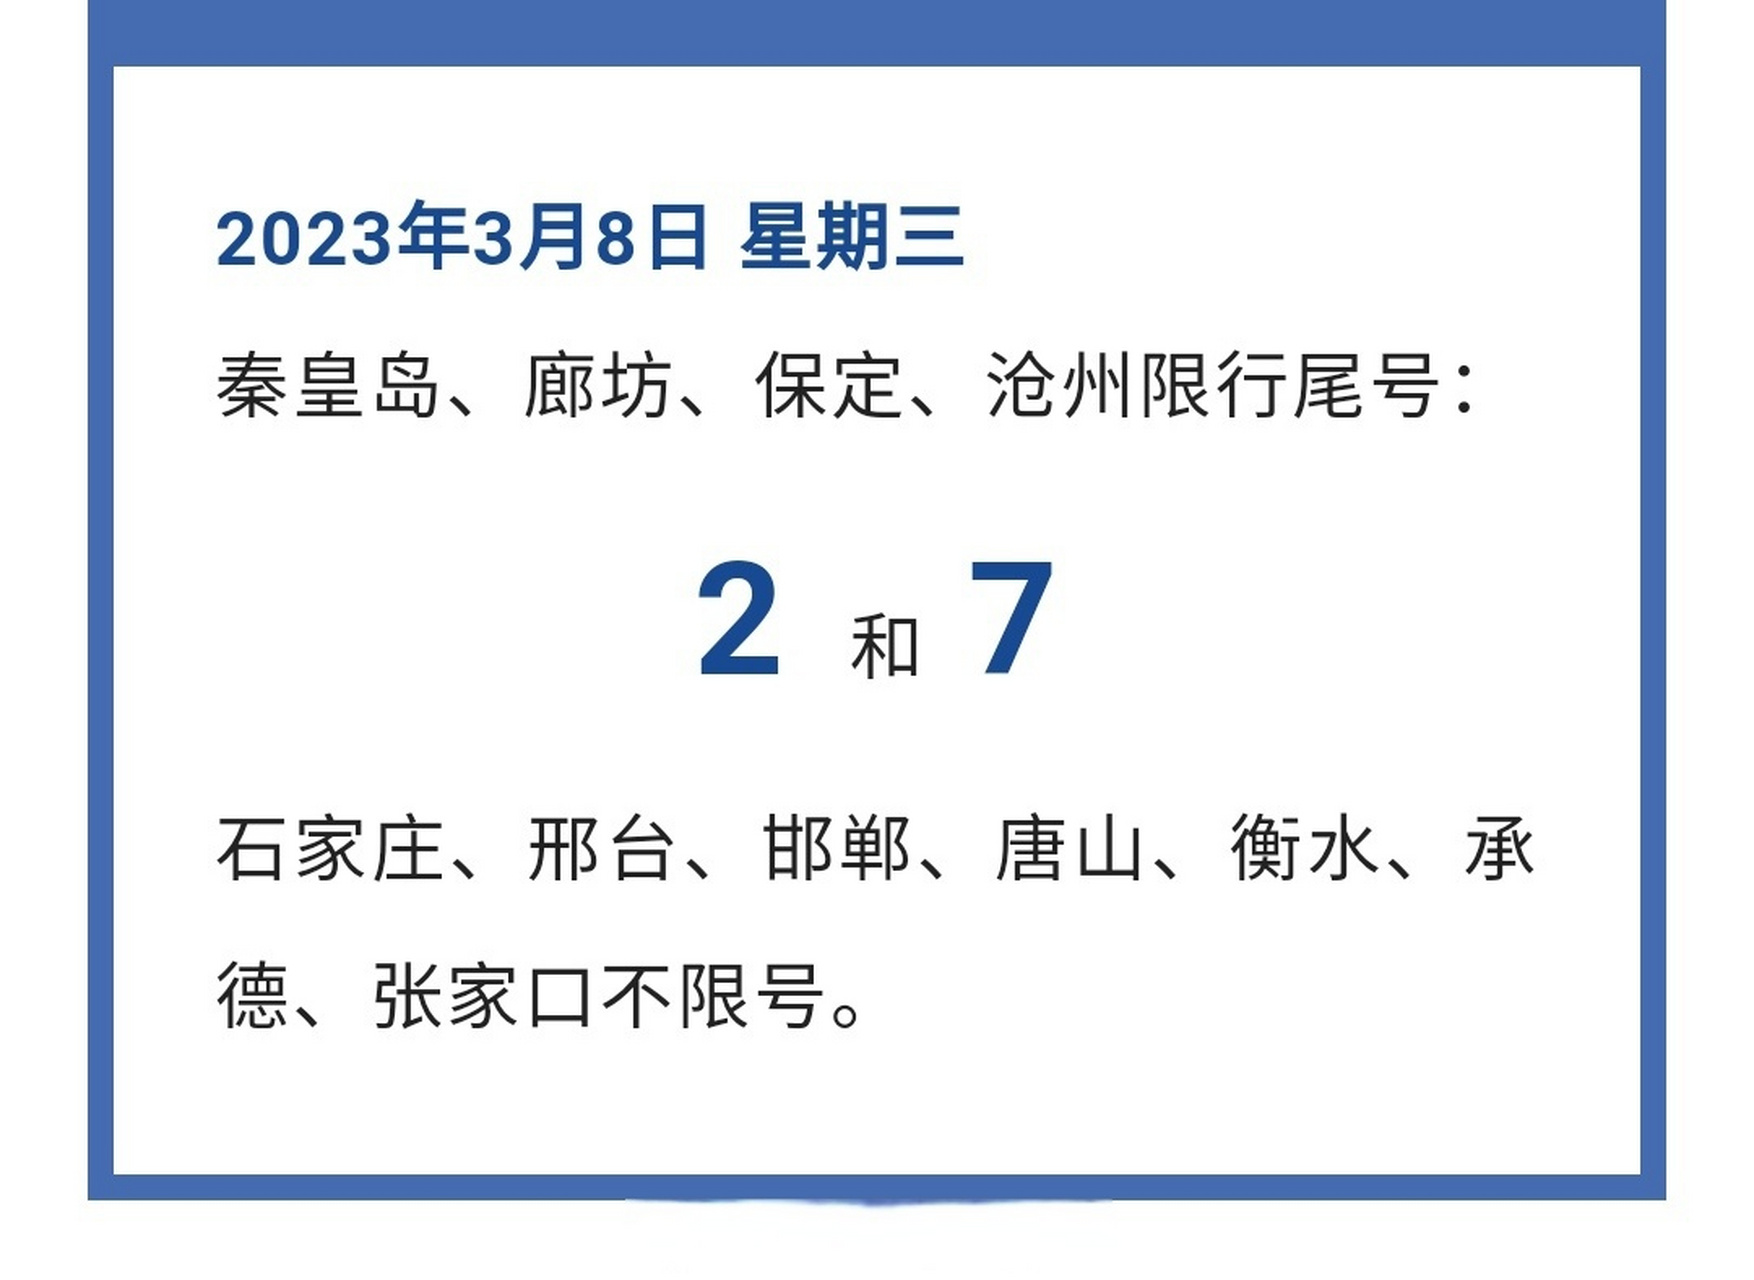 1,北京车牌限行尾号轮换时间2023年4月3日至2023年7月2日根据北京市